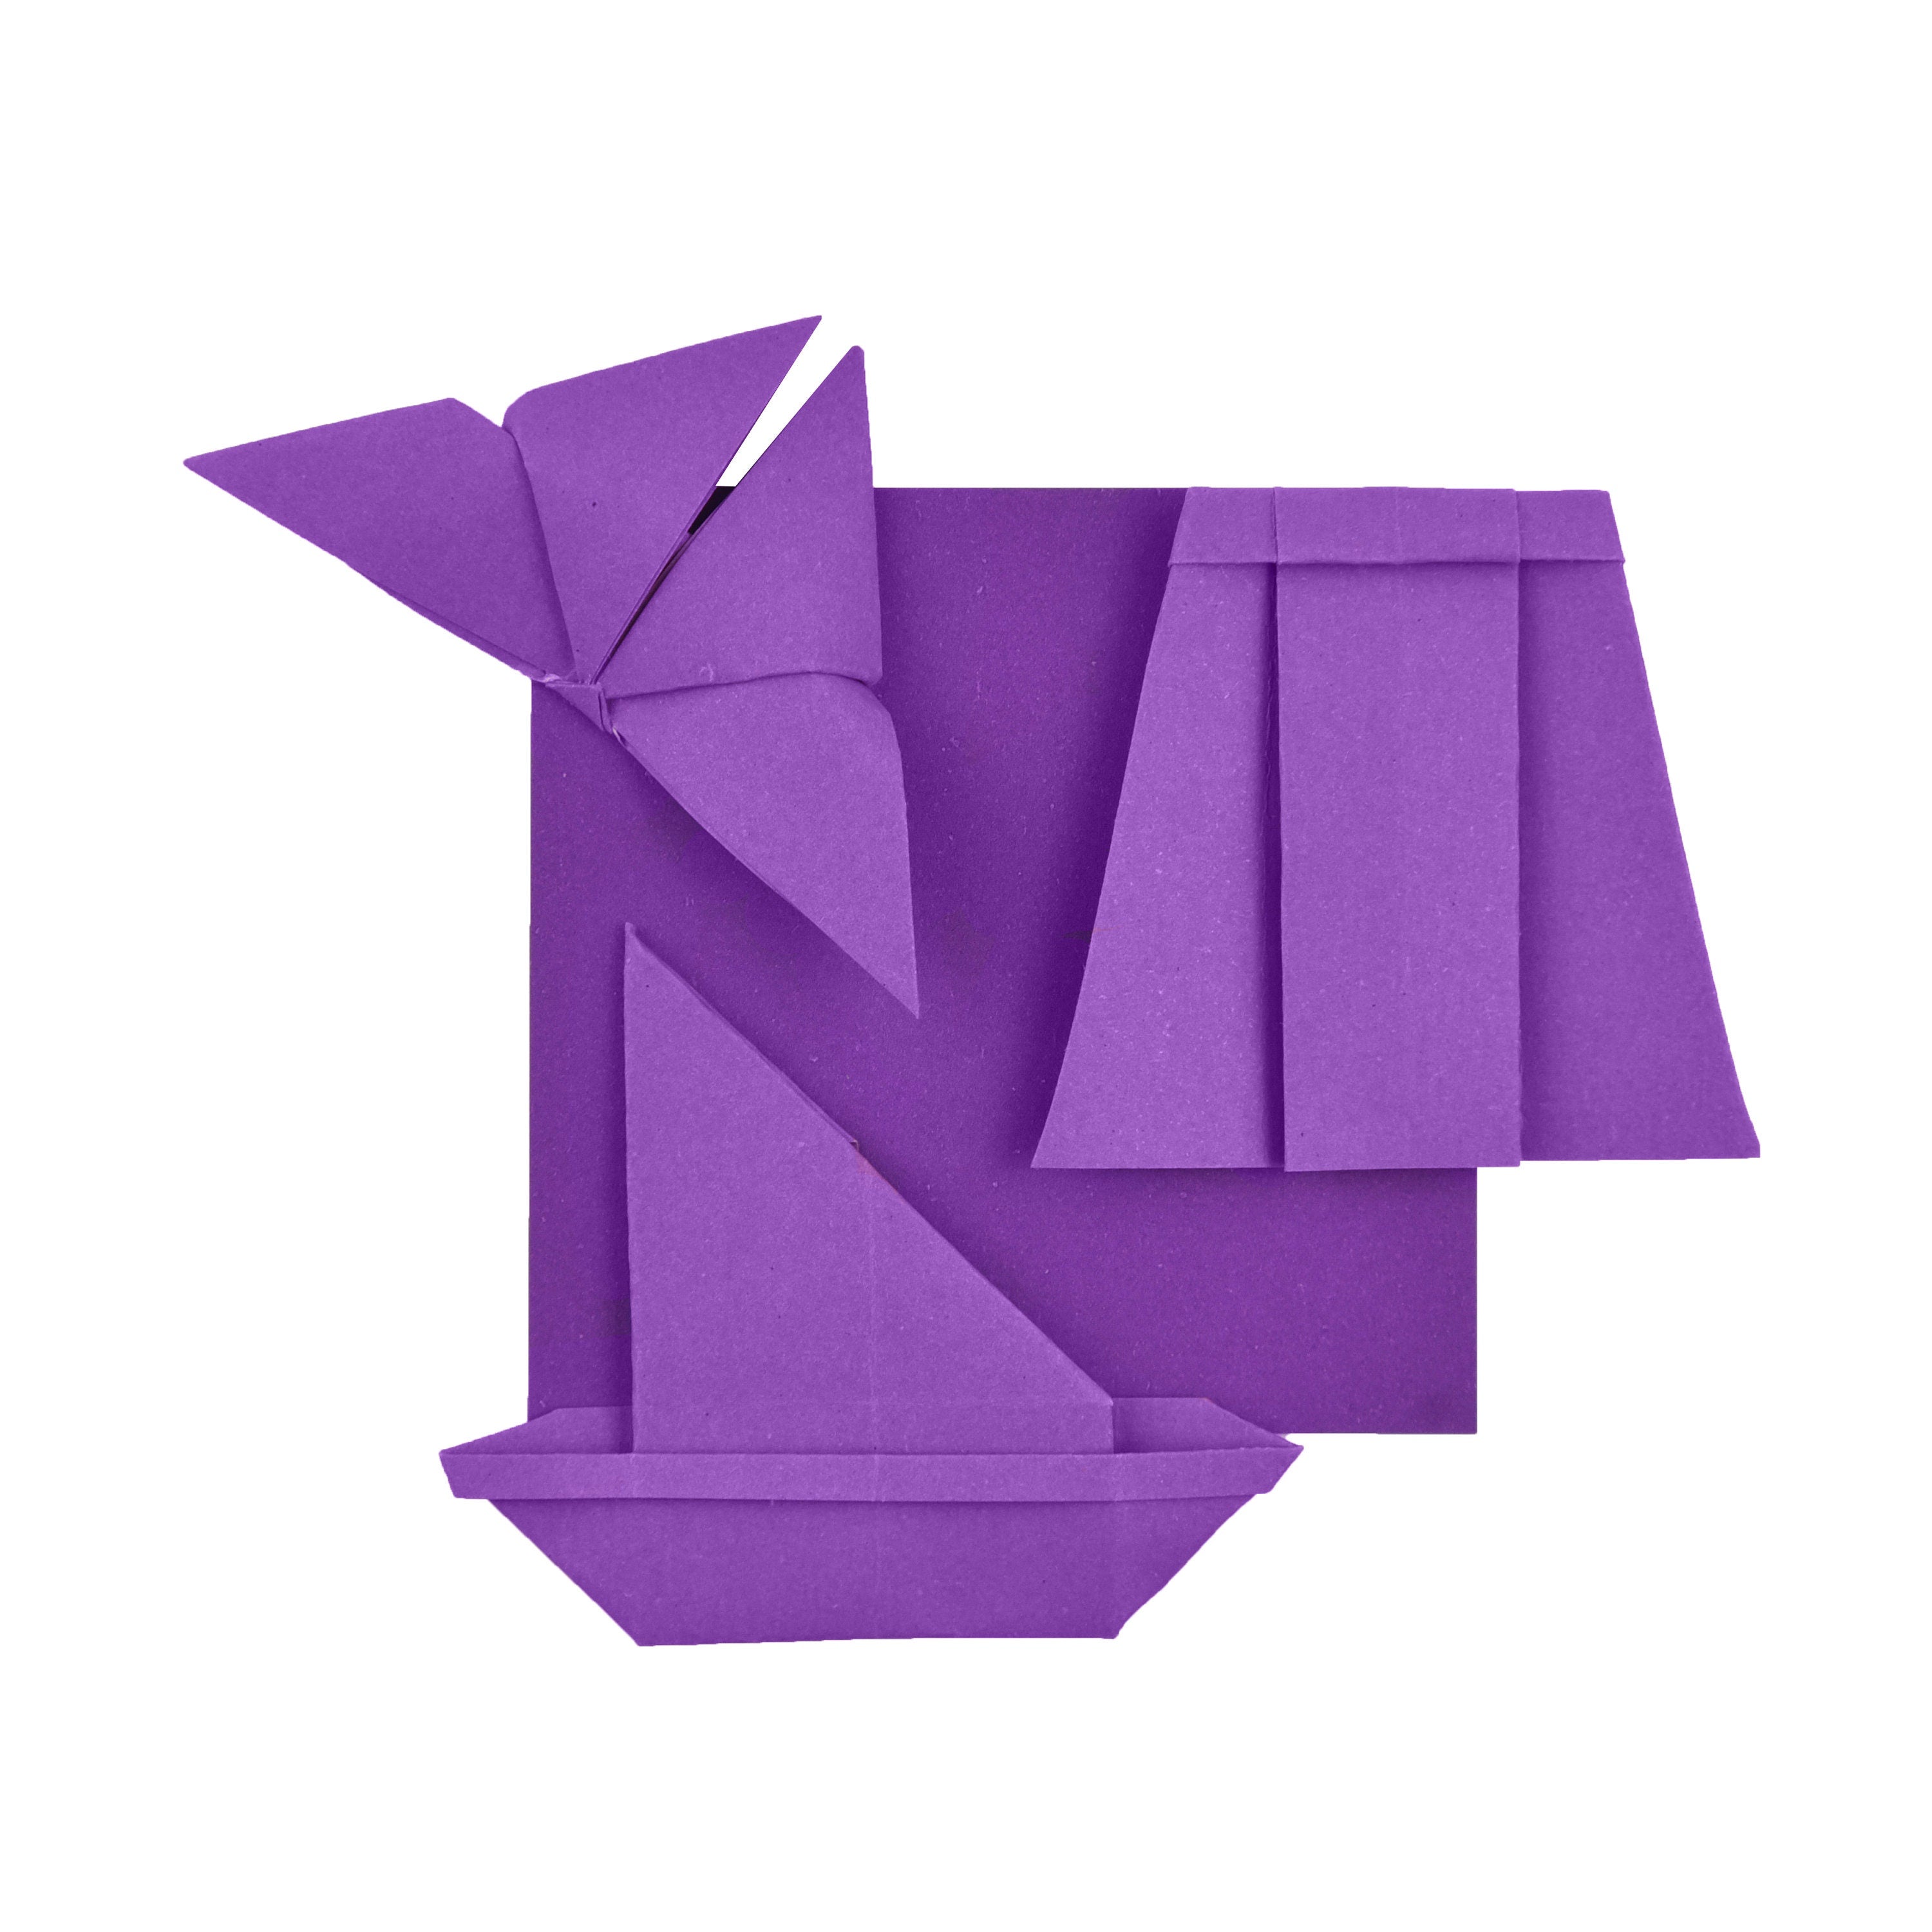 100 fogli di carta origami - 6x6 pollici - Confezione di carta quadrata per piegare, gru origami e decorazioni - P04